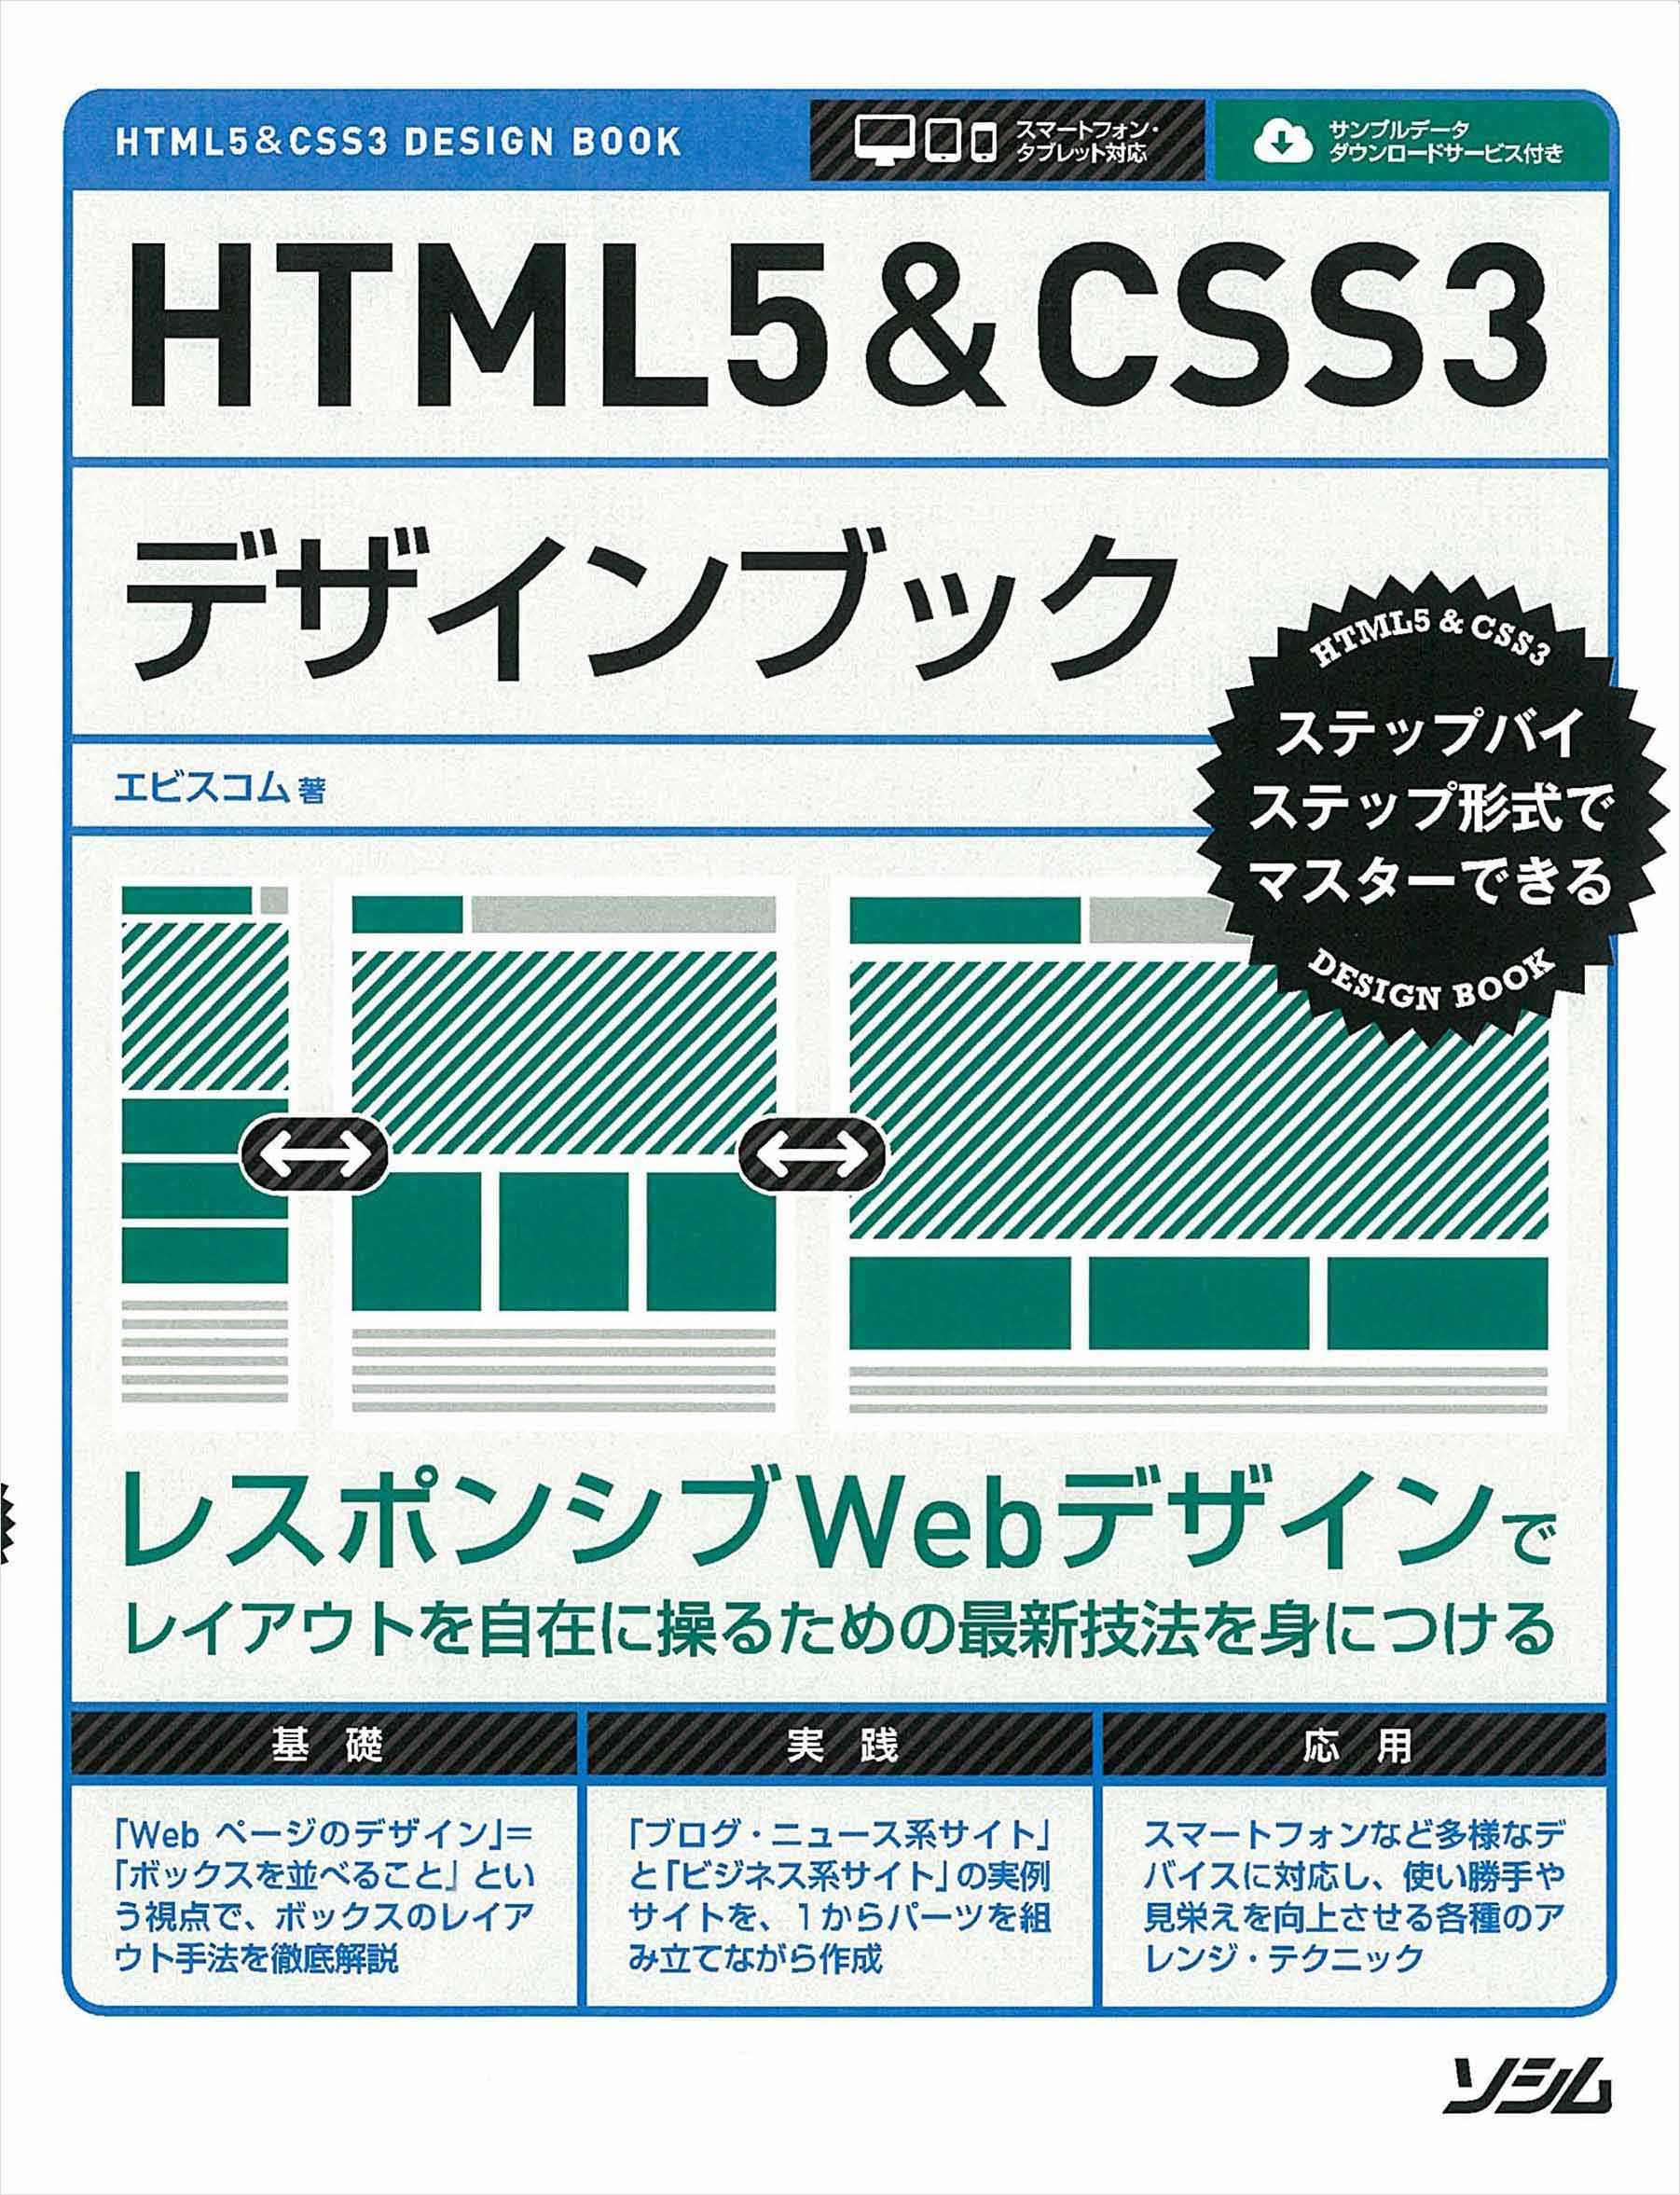 売り込み HTML5CSS3デザインブック HTML5CSS3 DESIGN B…